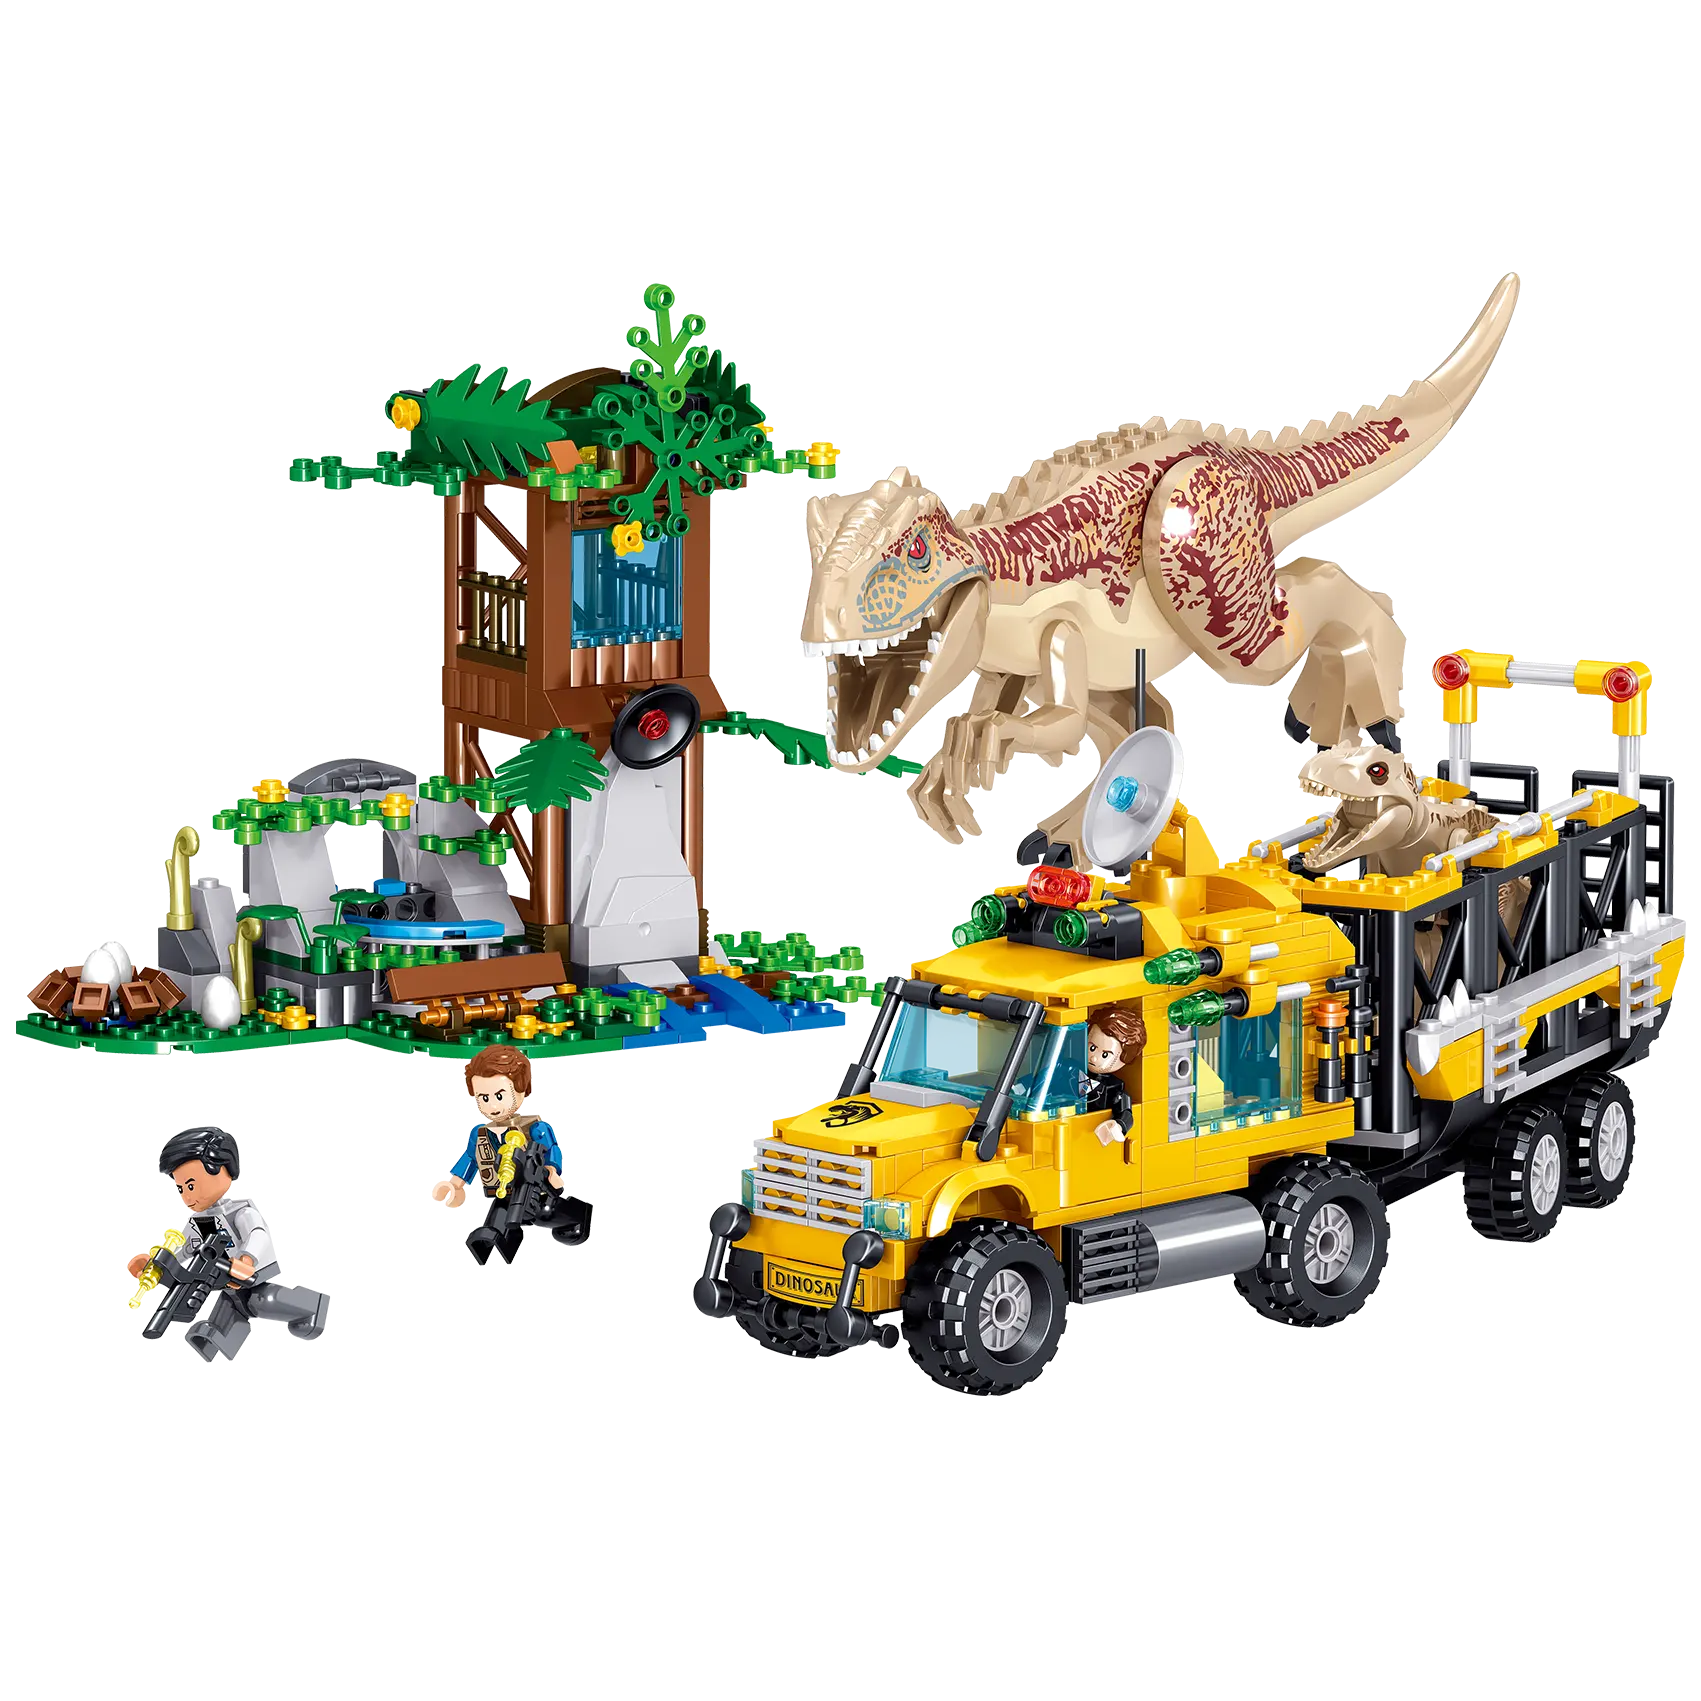 ZHEGAO-bloques de construcción de dinosaurios, juguetes educativos de dinosaurios, <span class=keywords><strong>bloque</strong></span> de animales